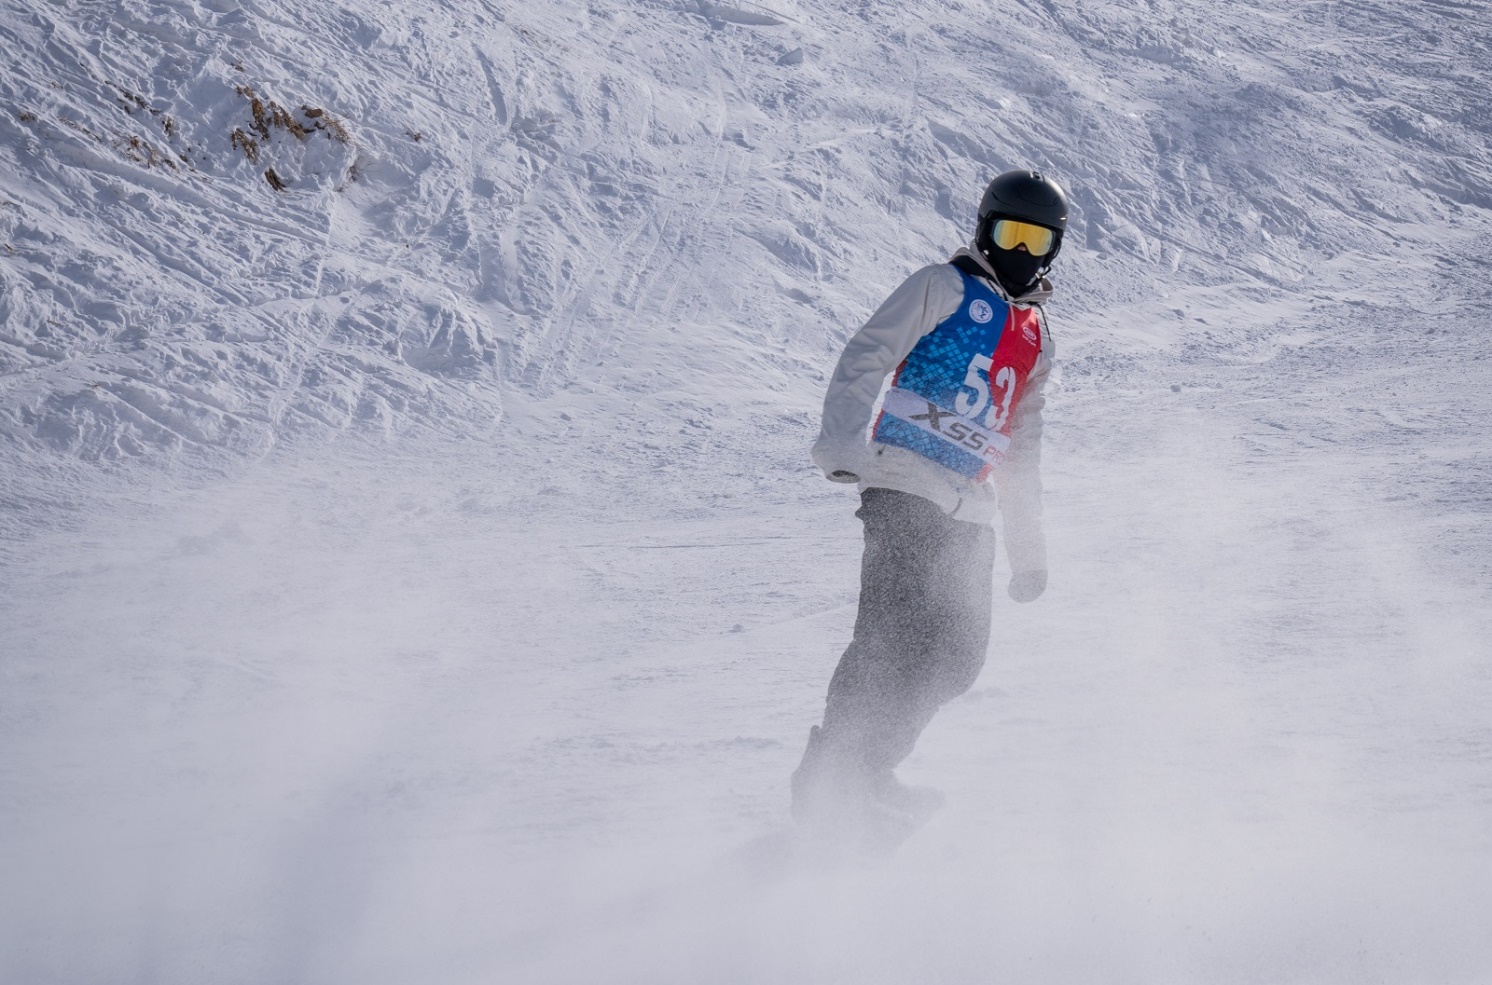  قهرمانی در قلب کوهستان در مسابقات جایزه بزرگ اسکی اسنوبرد MVM